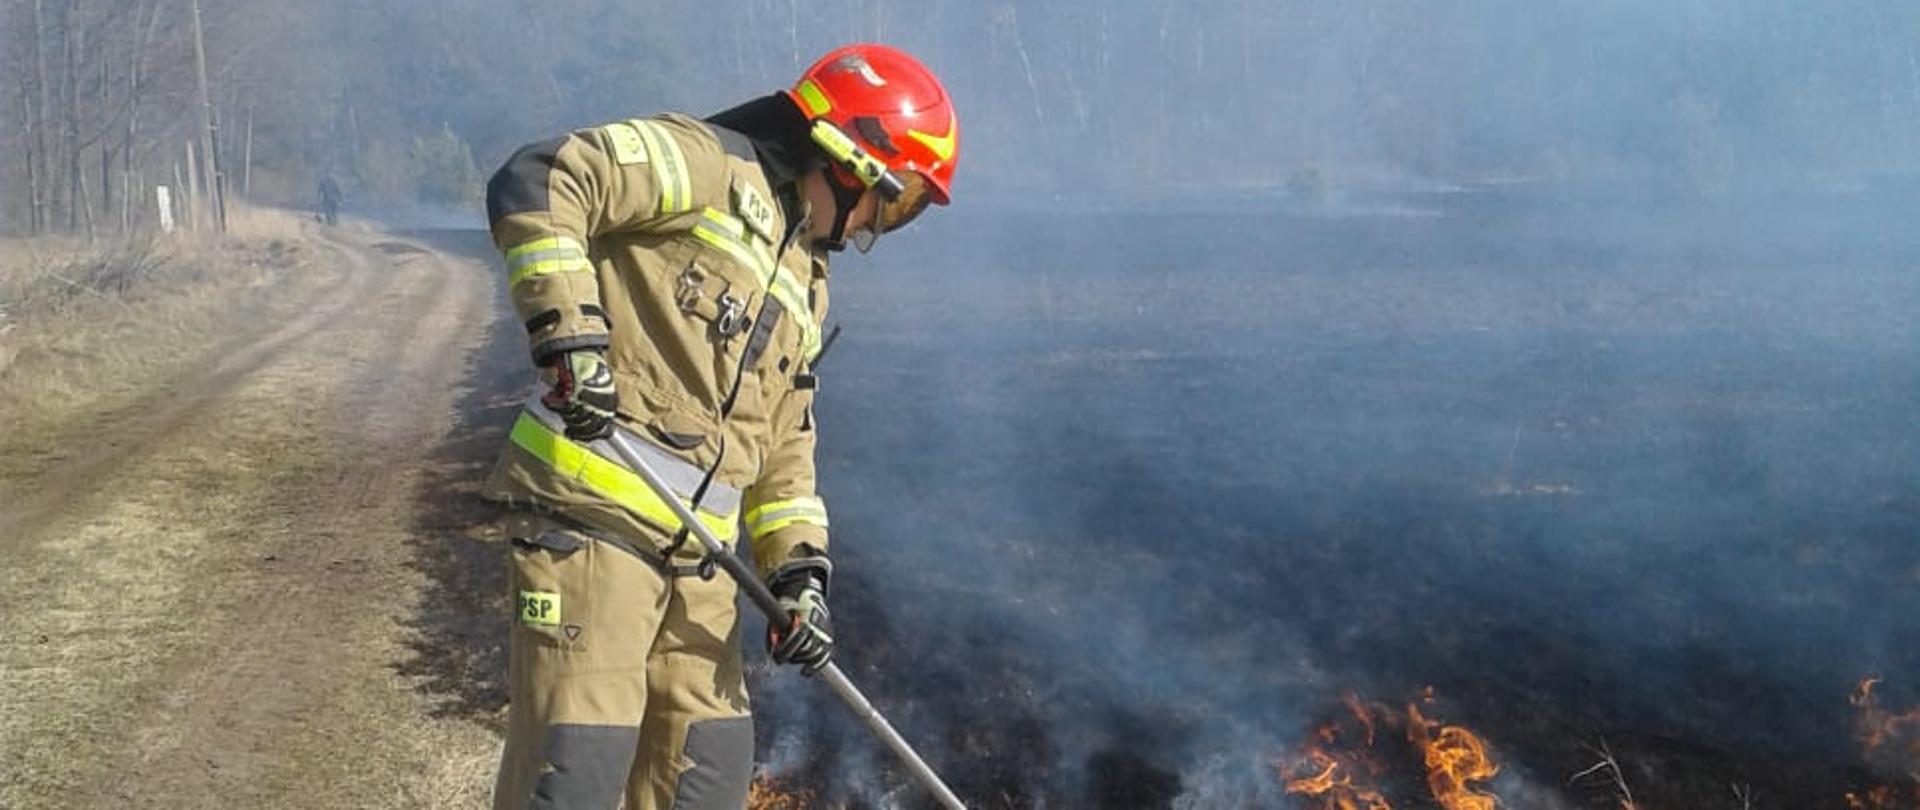 Na zdjęciu widać strażaka, który gasi pożar trawy przy użyciu tłumicy. W oddali widać dużą powierzchnię spalonych nieużytków.